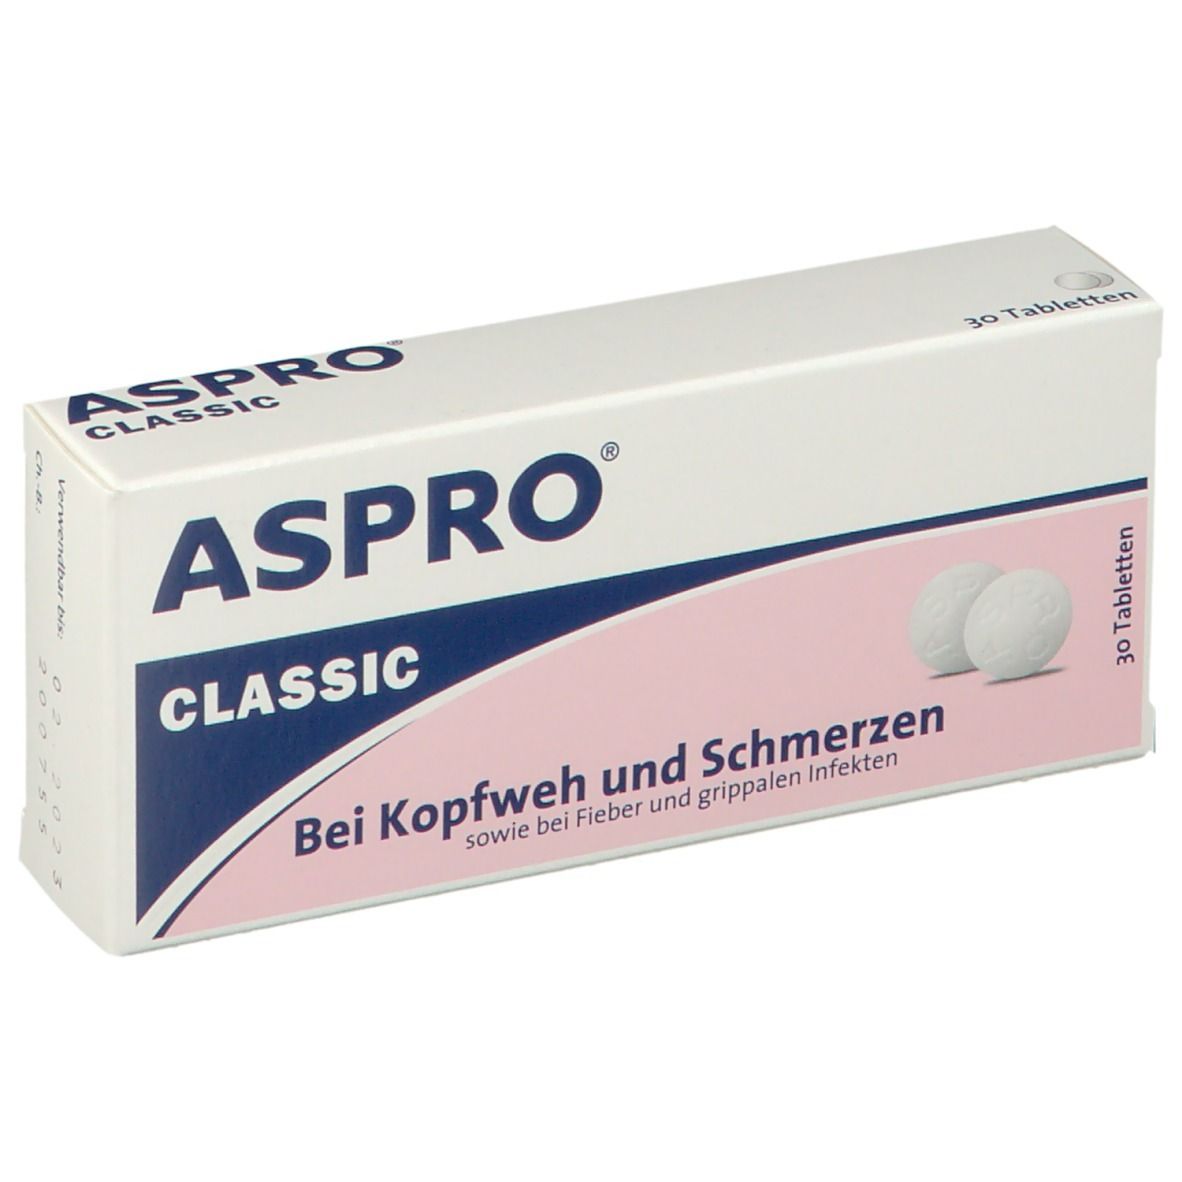 ASPRO® Classic